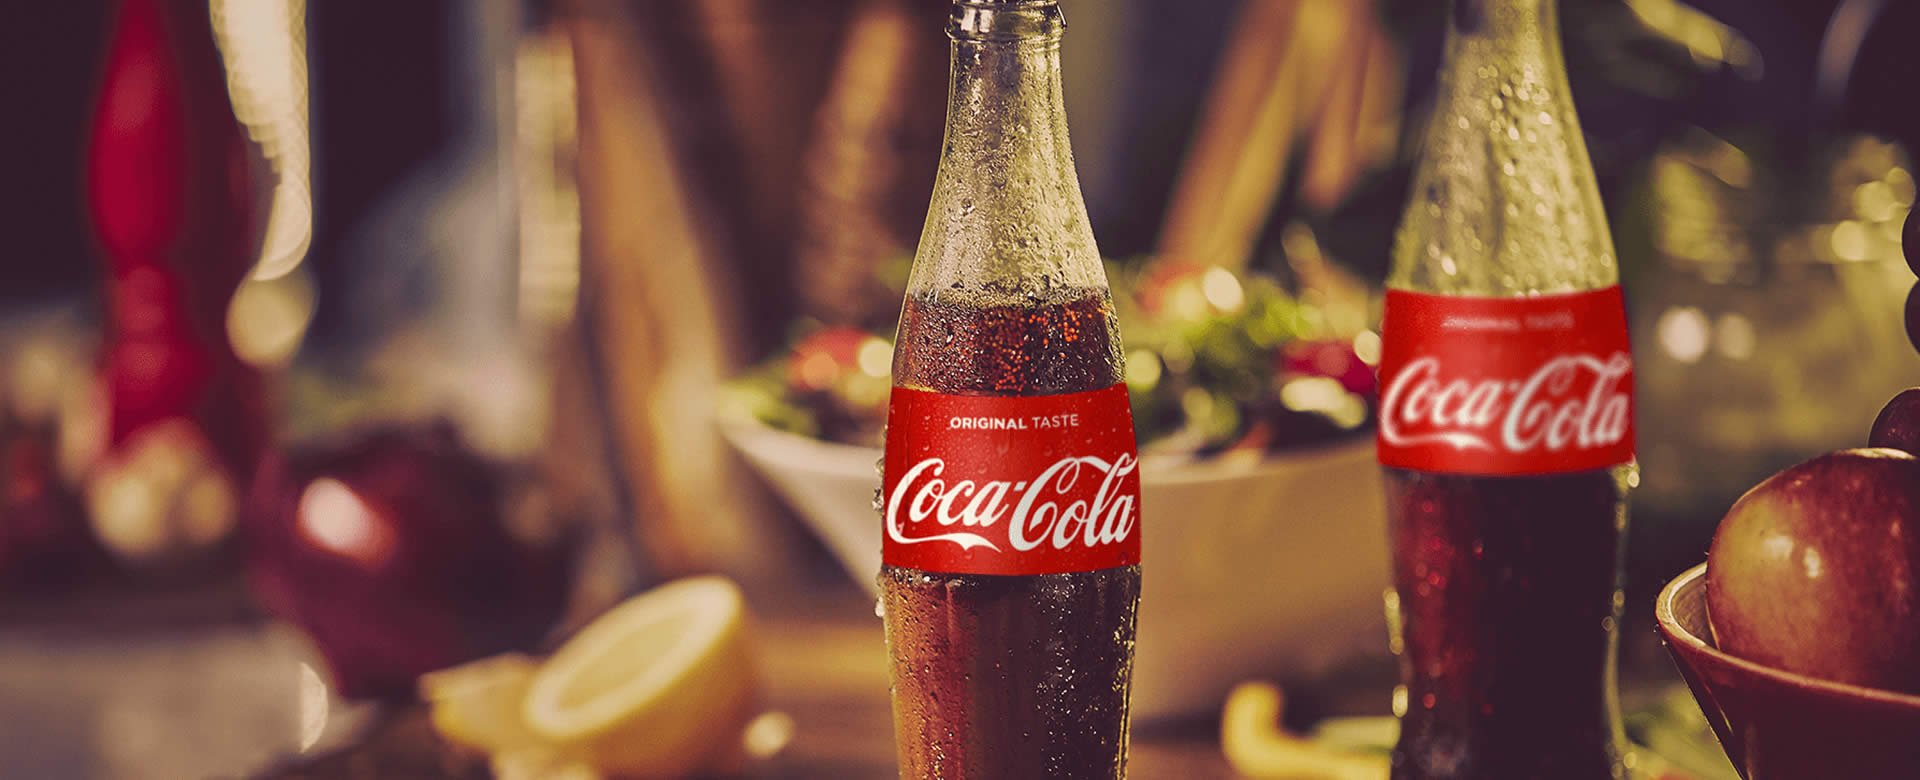 Coca Cola Company añadirá por primera vez en su historia una bebida con alcohol